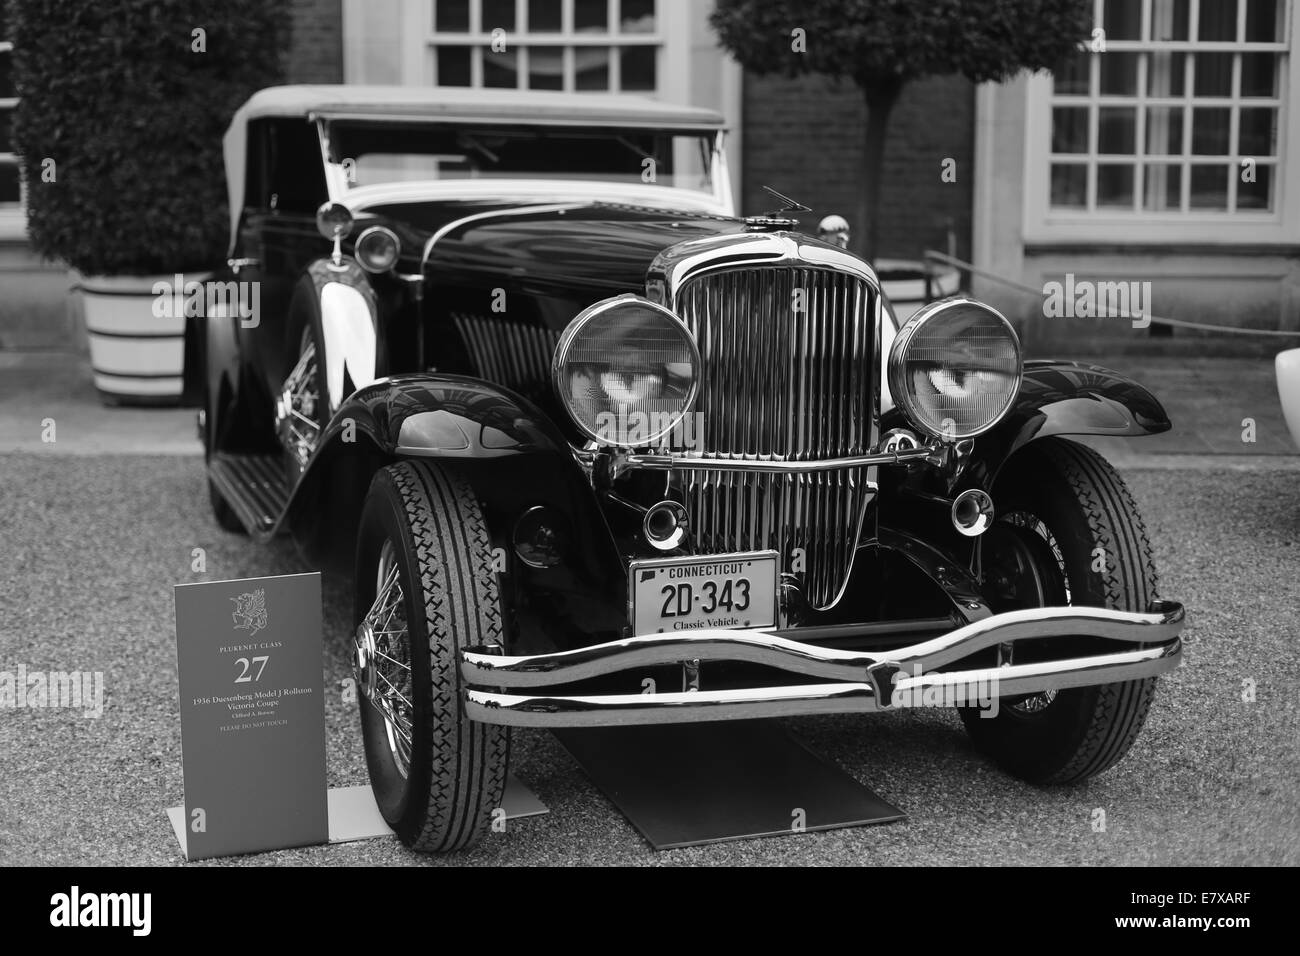 Londra, Inghilterra - Settembre 06: UN 1936 Modello Duesenberg J DAGLI STATI UNITI a Concours di eleganza Hampton Court Palace - Londra su Foto Stock